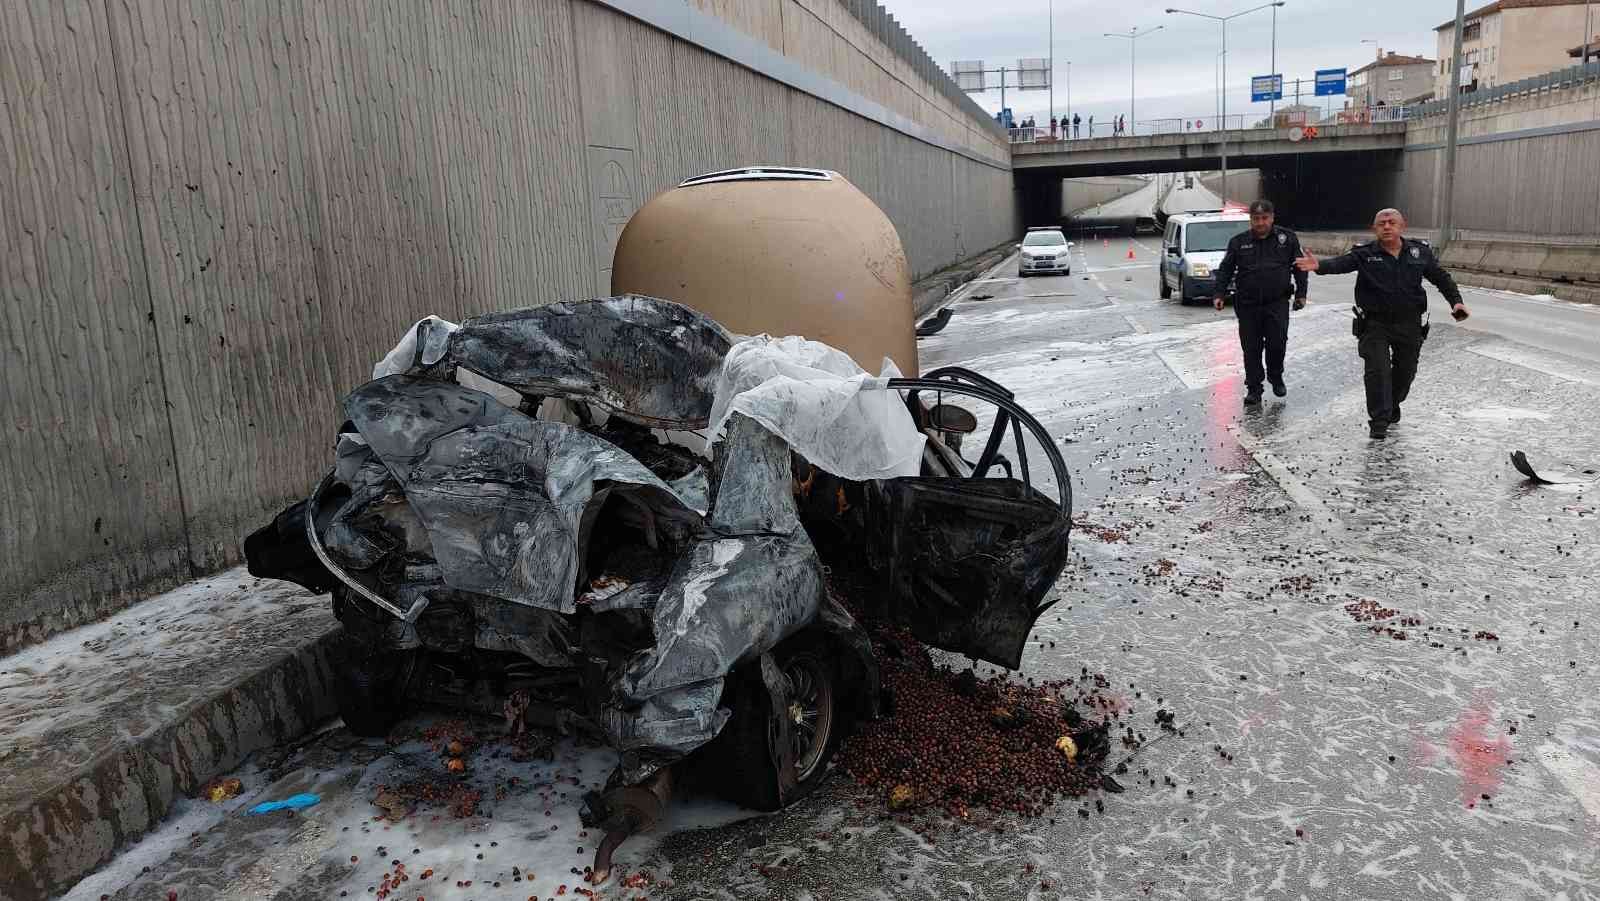 Samsun’da arıza yapan otomobile tır çarptı: 2 kişi yanarak hayatını kaybetti